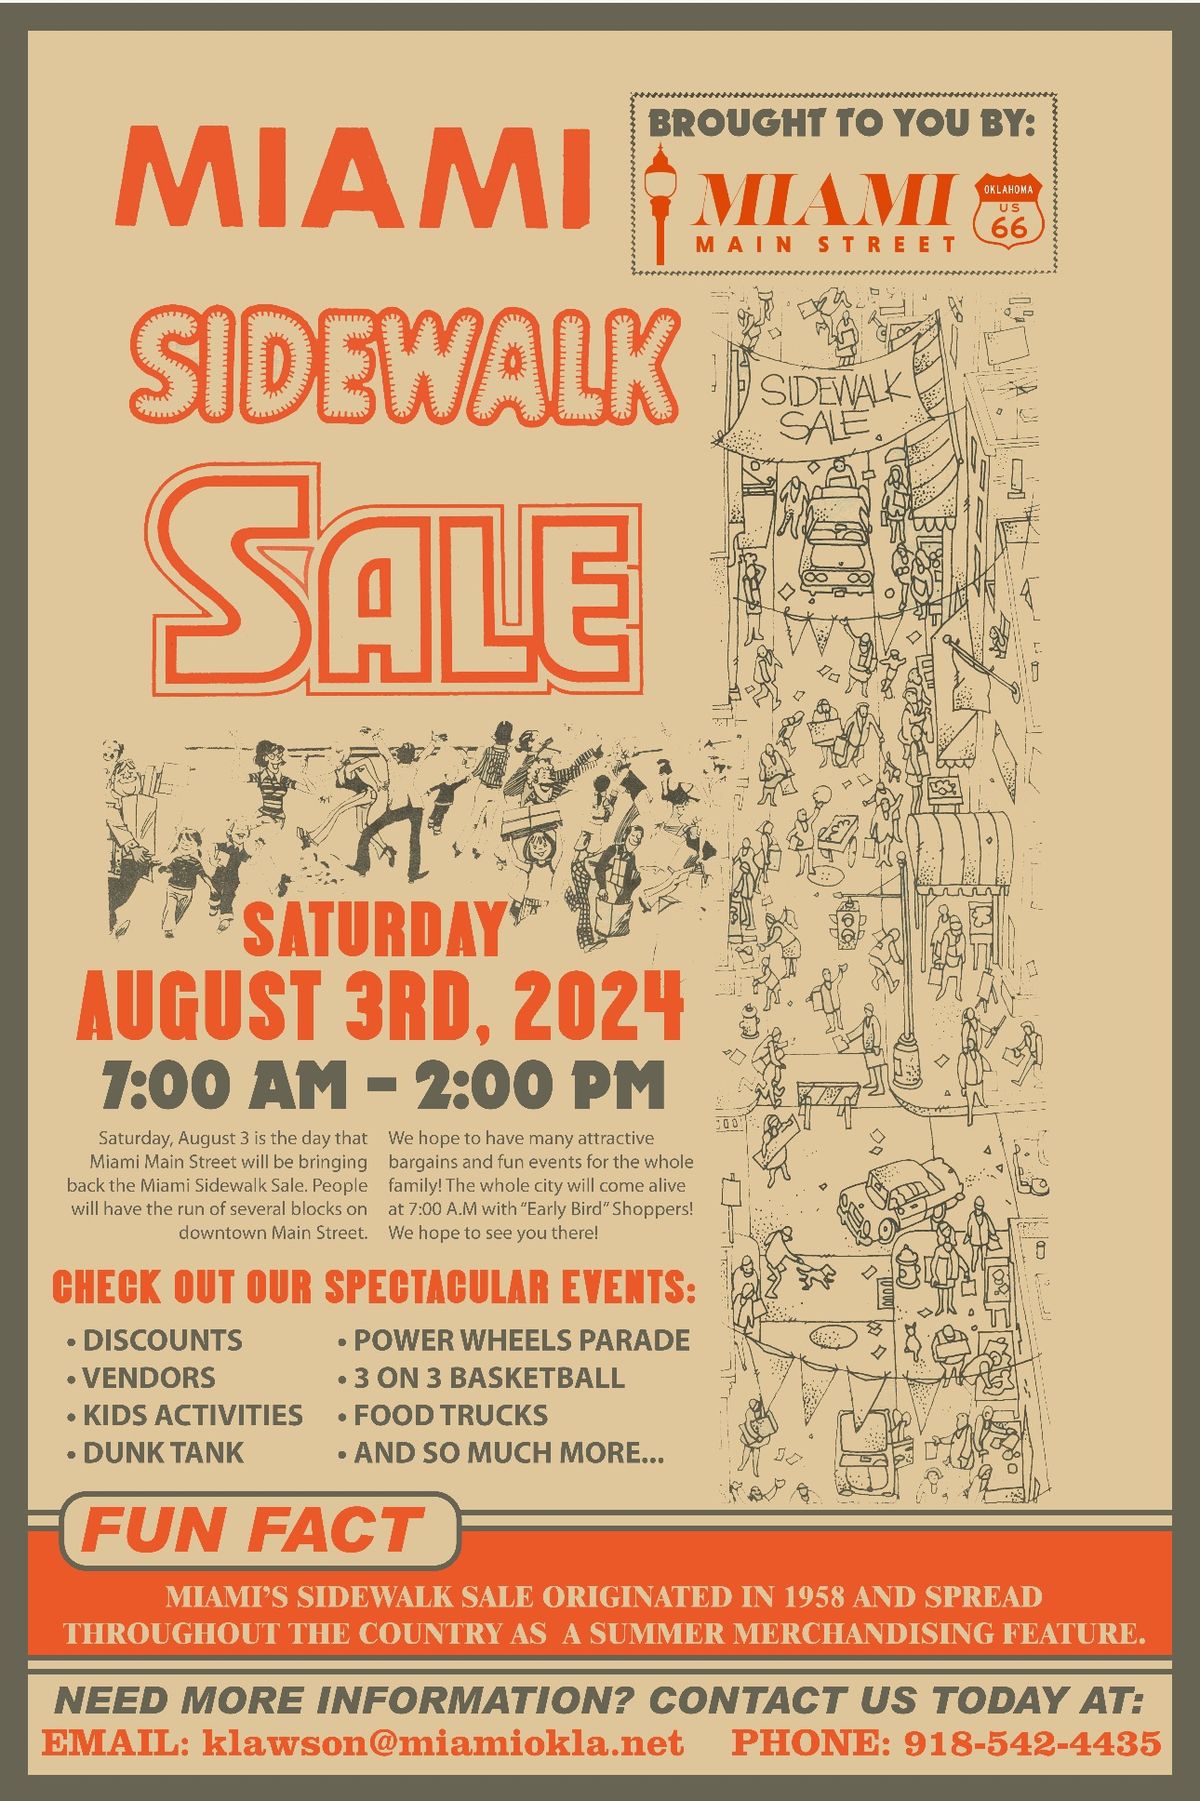 Miami's Sidewalk Sale